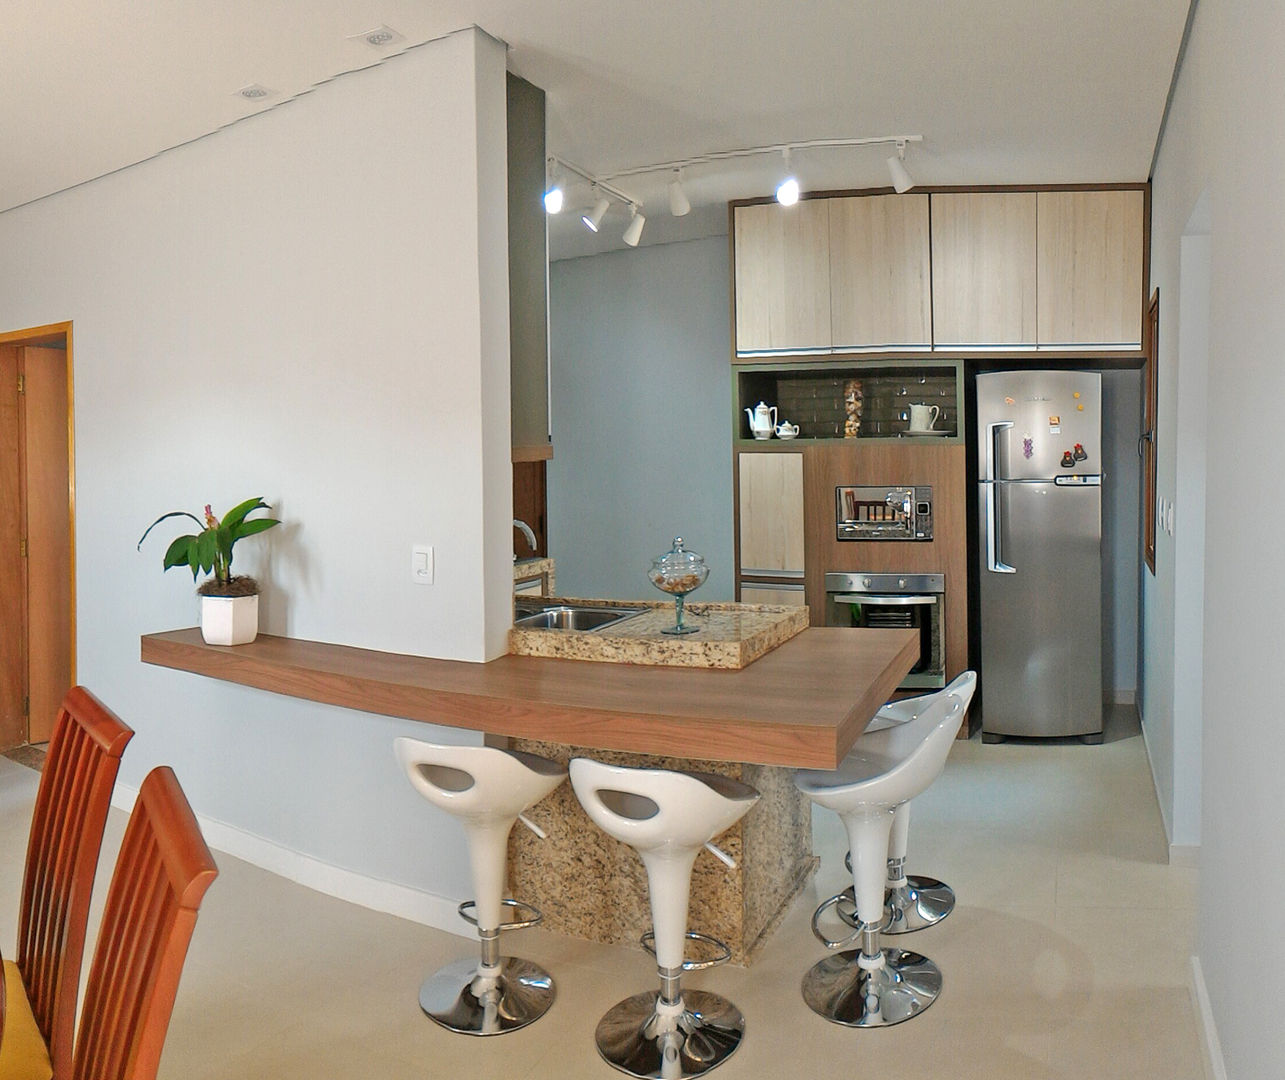 Residência ACJ , Nailê Rabelo - arquitetura e design Nailê Rabelo - arquitetura e design Modern style kitchen